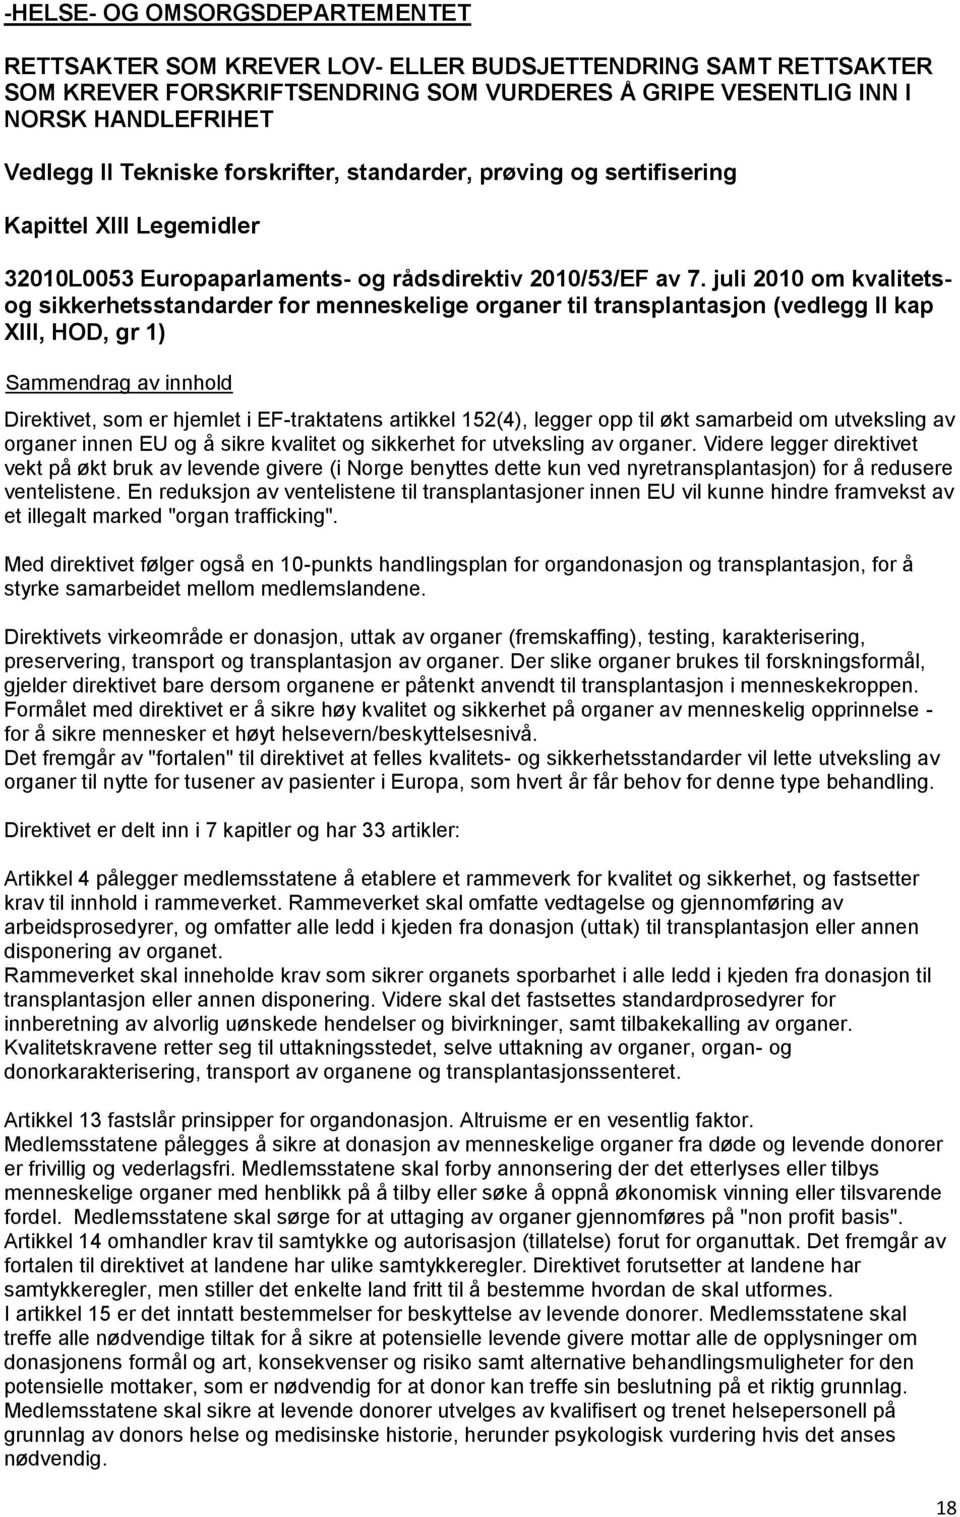 juli 2010 om kvalitetsog sikkerhetsstandarder for menneskelige organer til transplantasjon (vedlegg II kap XIII, HOD, gr 1) Direktivet, som er hjemlet i EF-traktatens artikkel 152(4), legger opp til